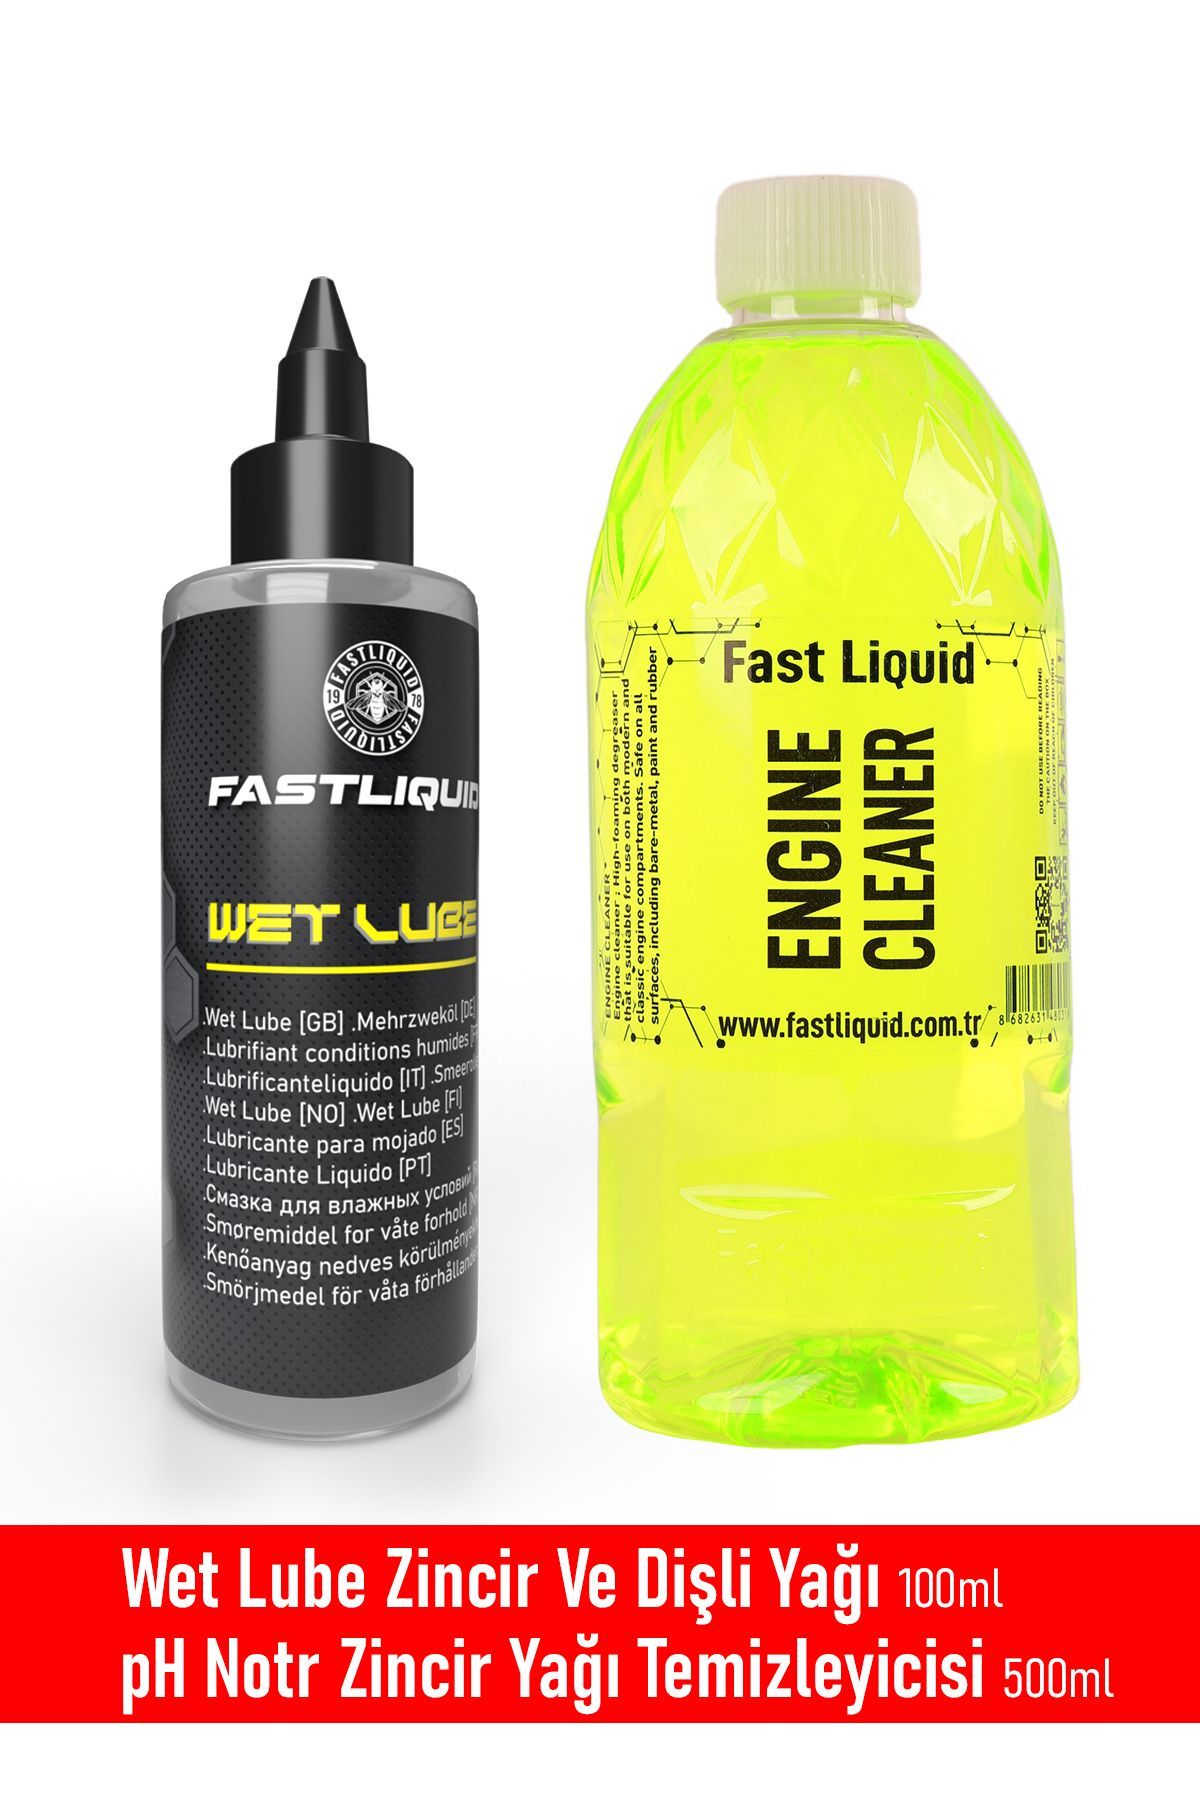 Fast Liquid Wet Lube Zincir Ve Dişli Yağı 100ml | Zincir Temizleyici 500ml 2'li Set